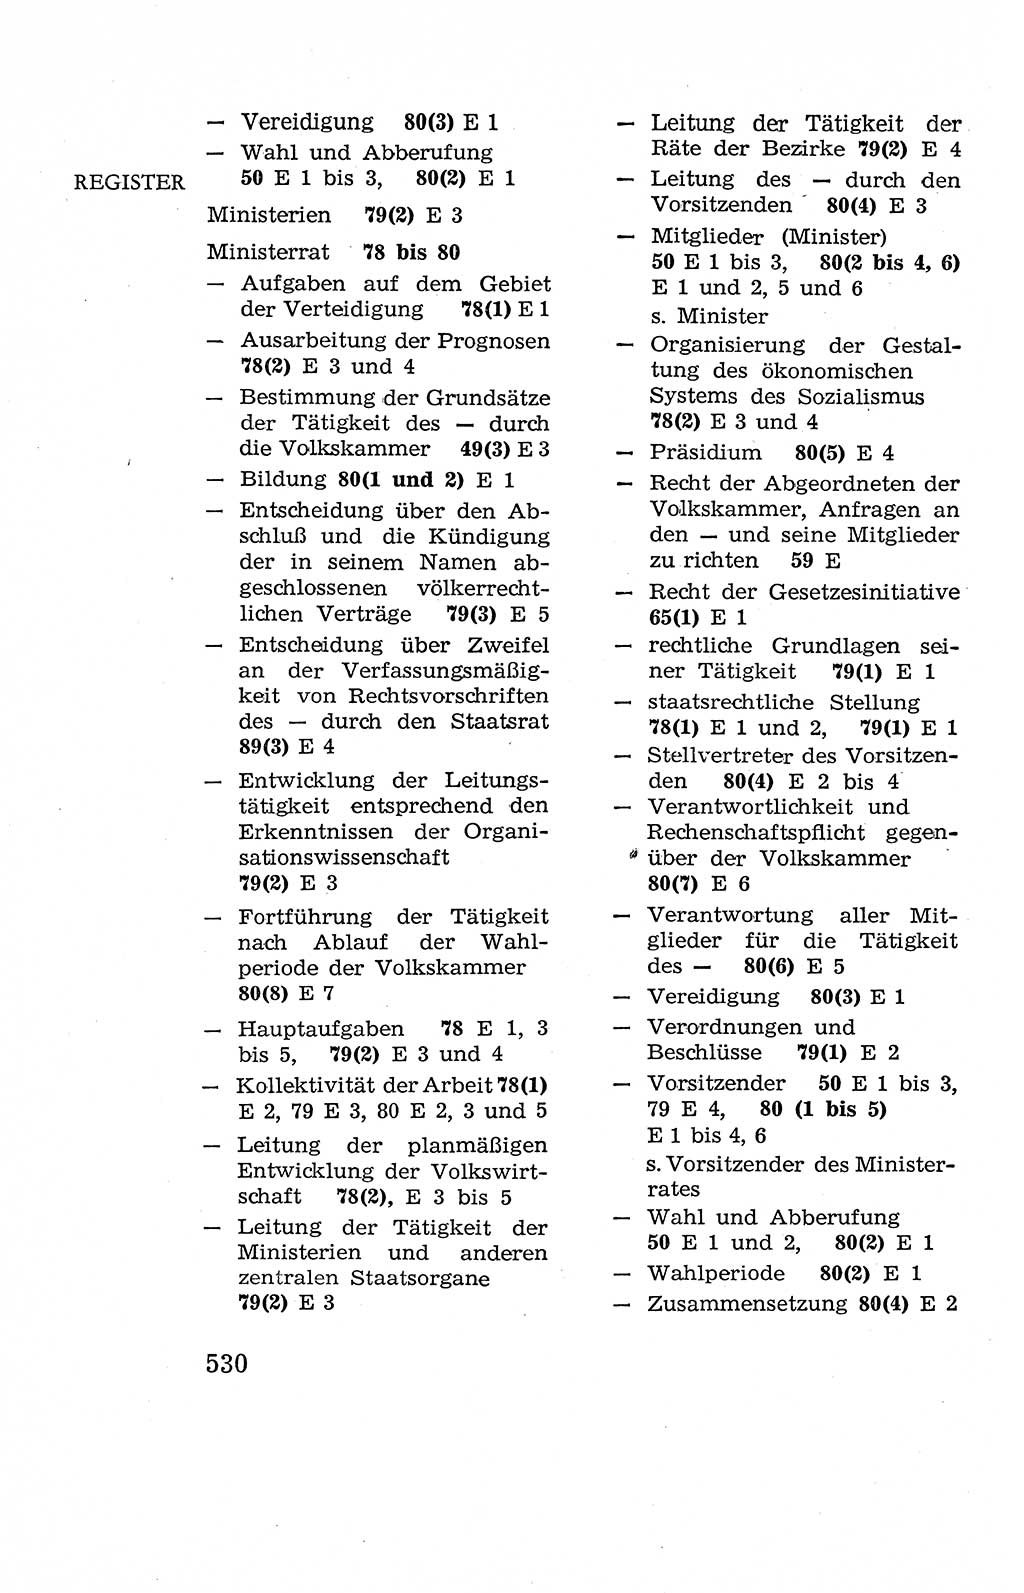 Verfassung der Deutschen Demokratischen Republik (DDR), Dokumente, Kommentar 1969, Band 2, Seite 530 (Verf. DDR Dok. Komm. 1969, Bd. 2, S. 530)